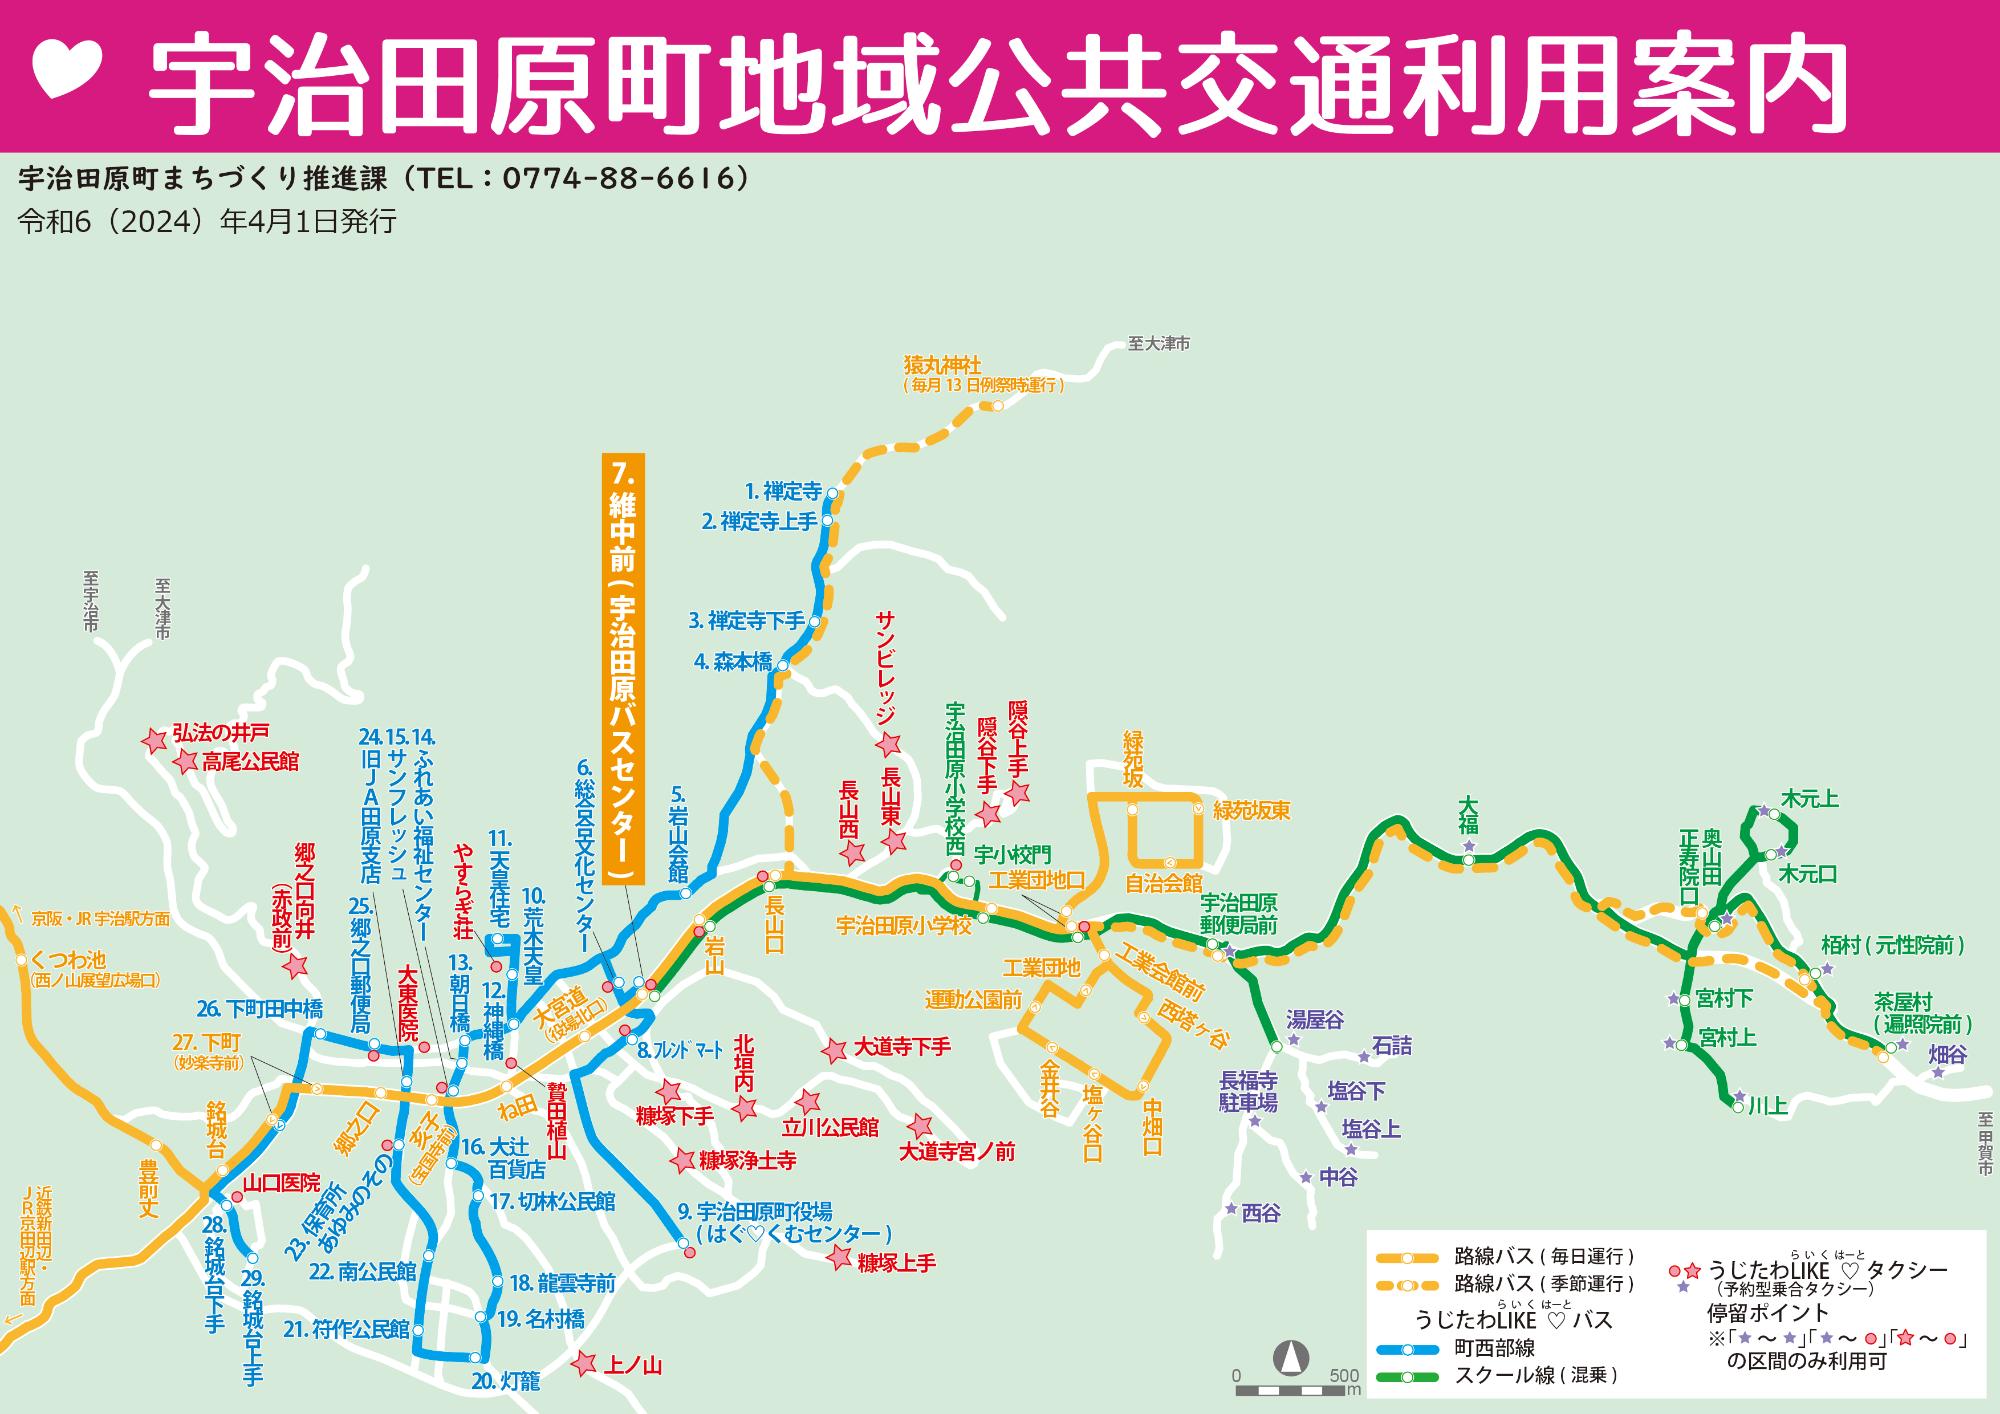 「新しい地域公共交通」路線図(地域公共交通利用案内より抜粋)